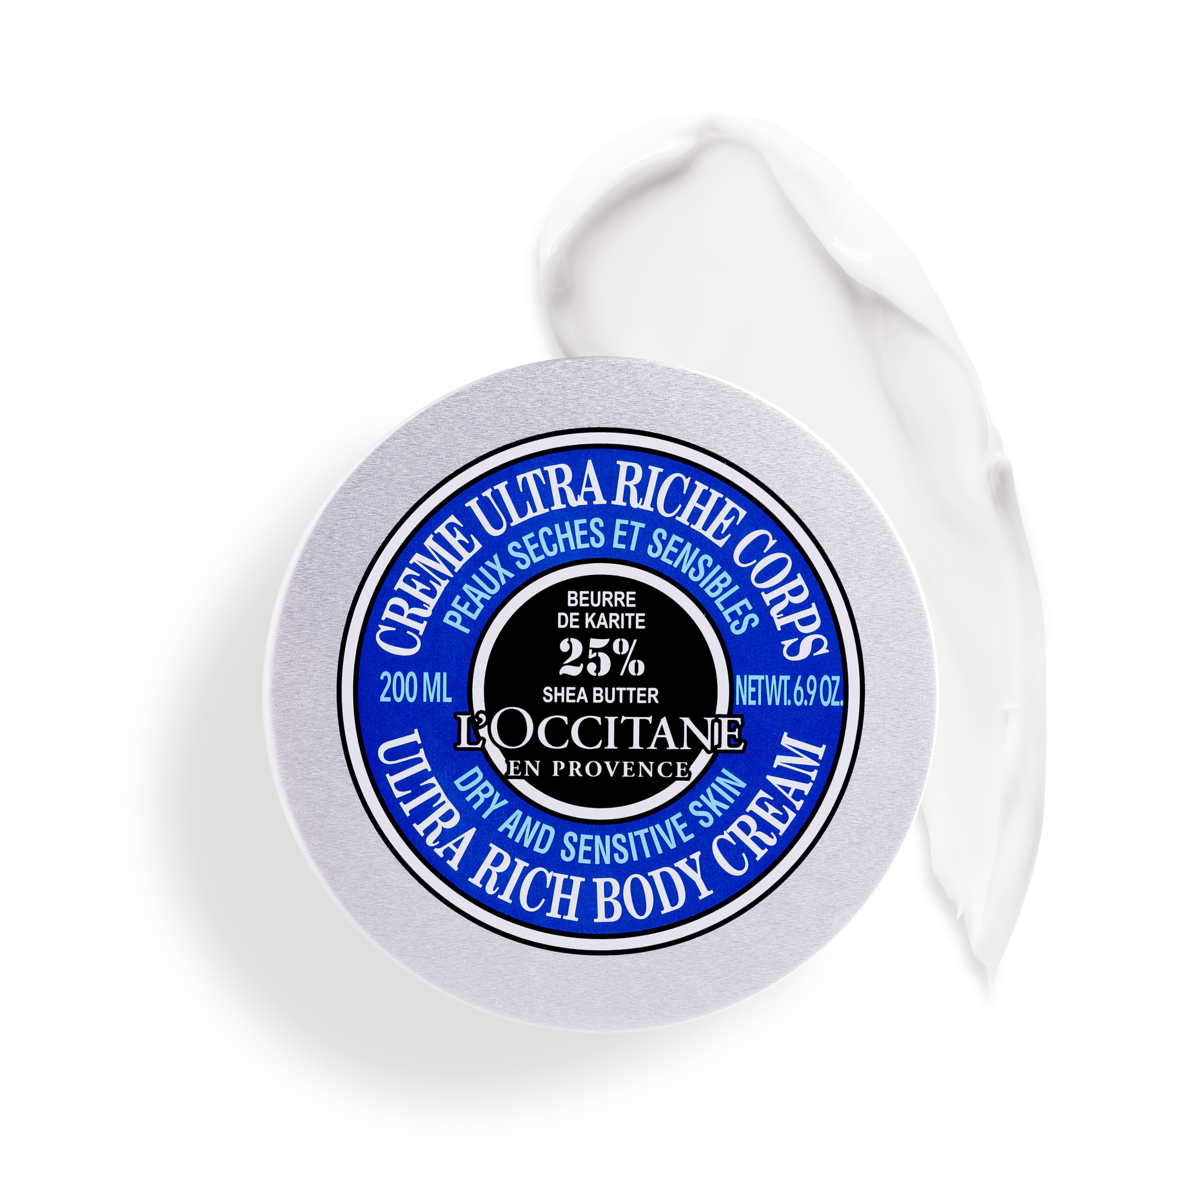 Выбираем лучшие российские духи: 10 вариантов от ведущих парфюмерных домов